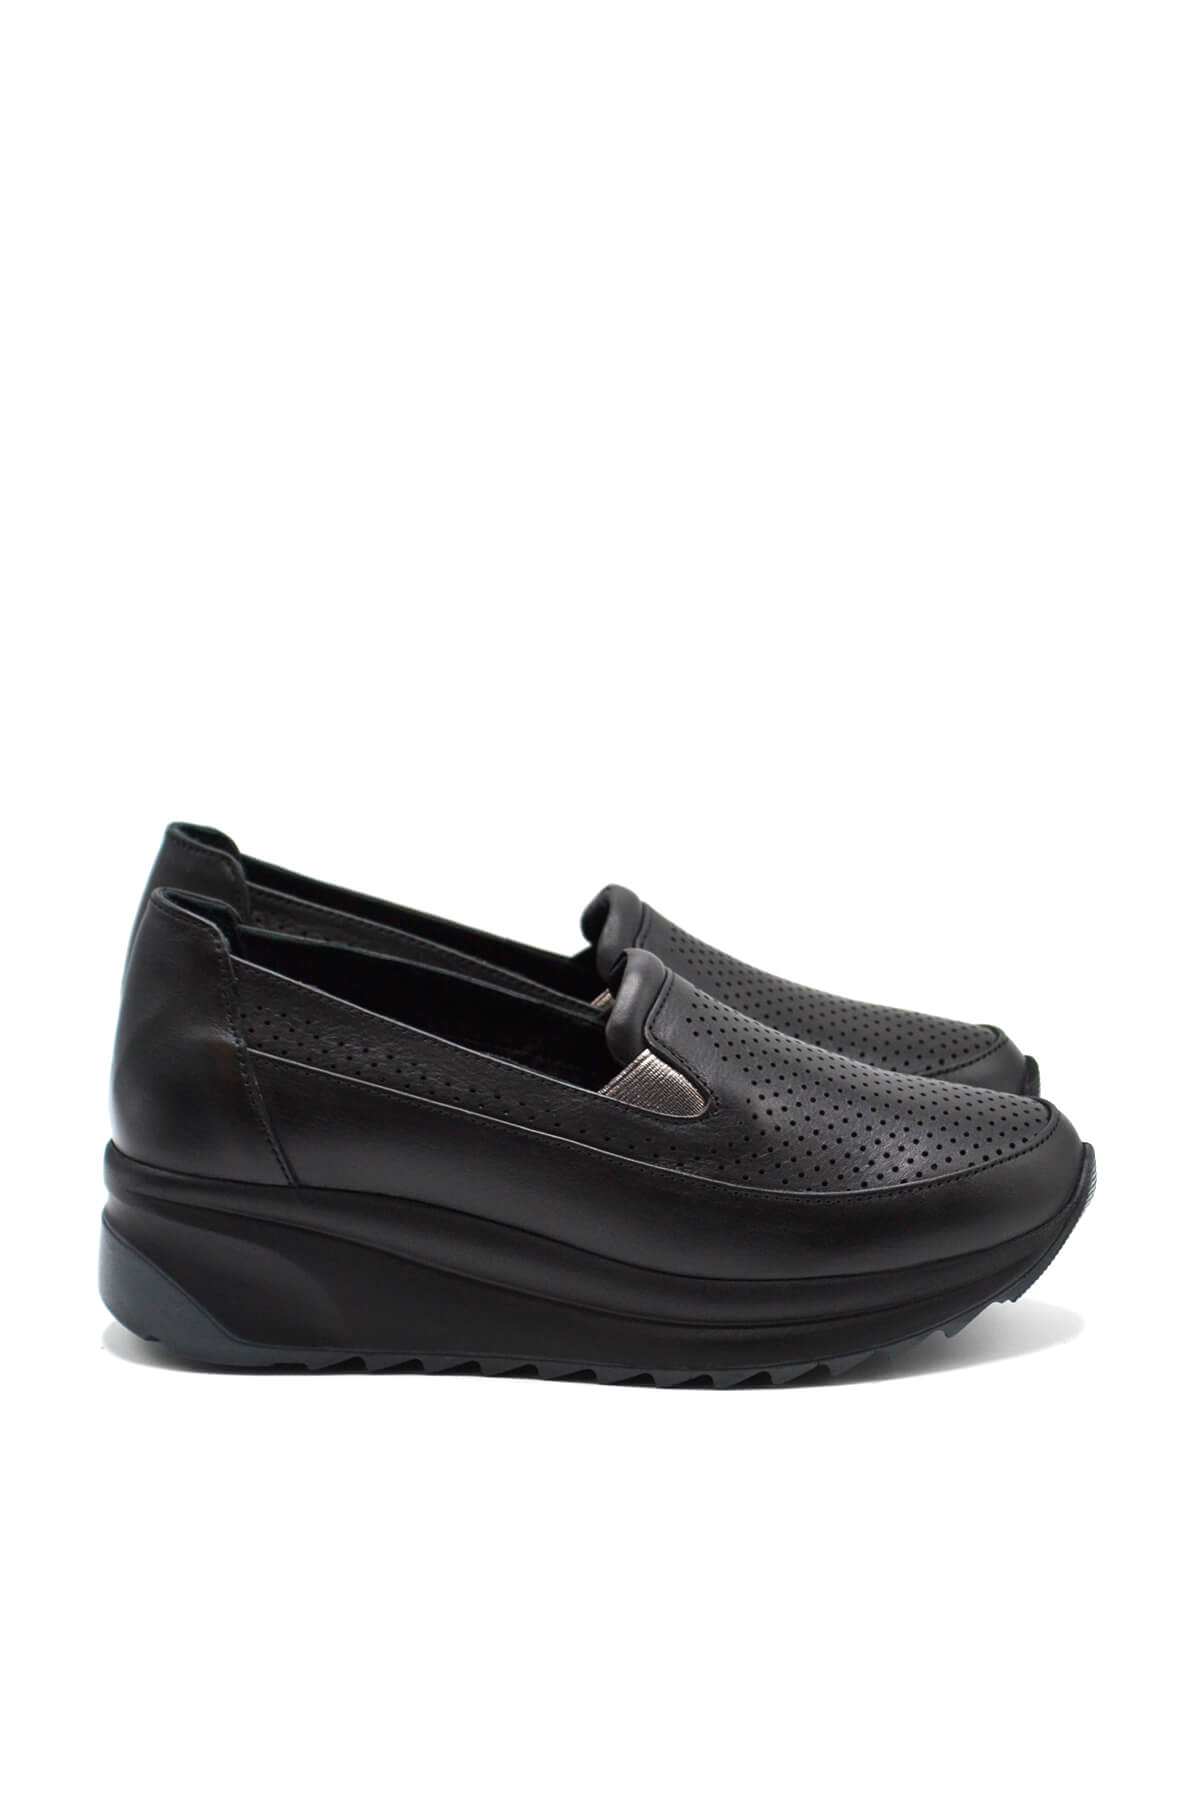 Kadın Dolgu Topuk Deri Sneakers Siyah 2310302Y